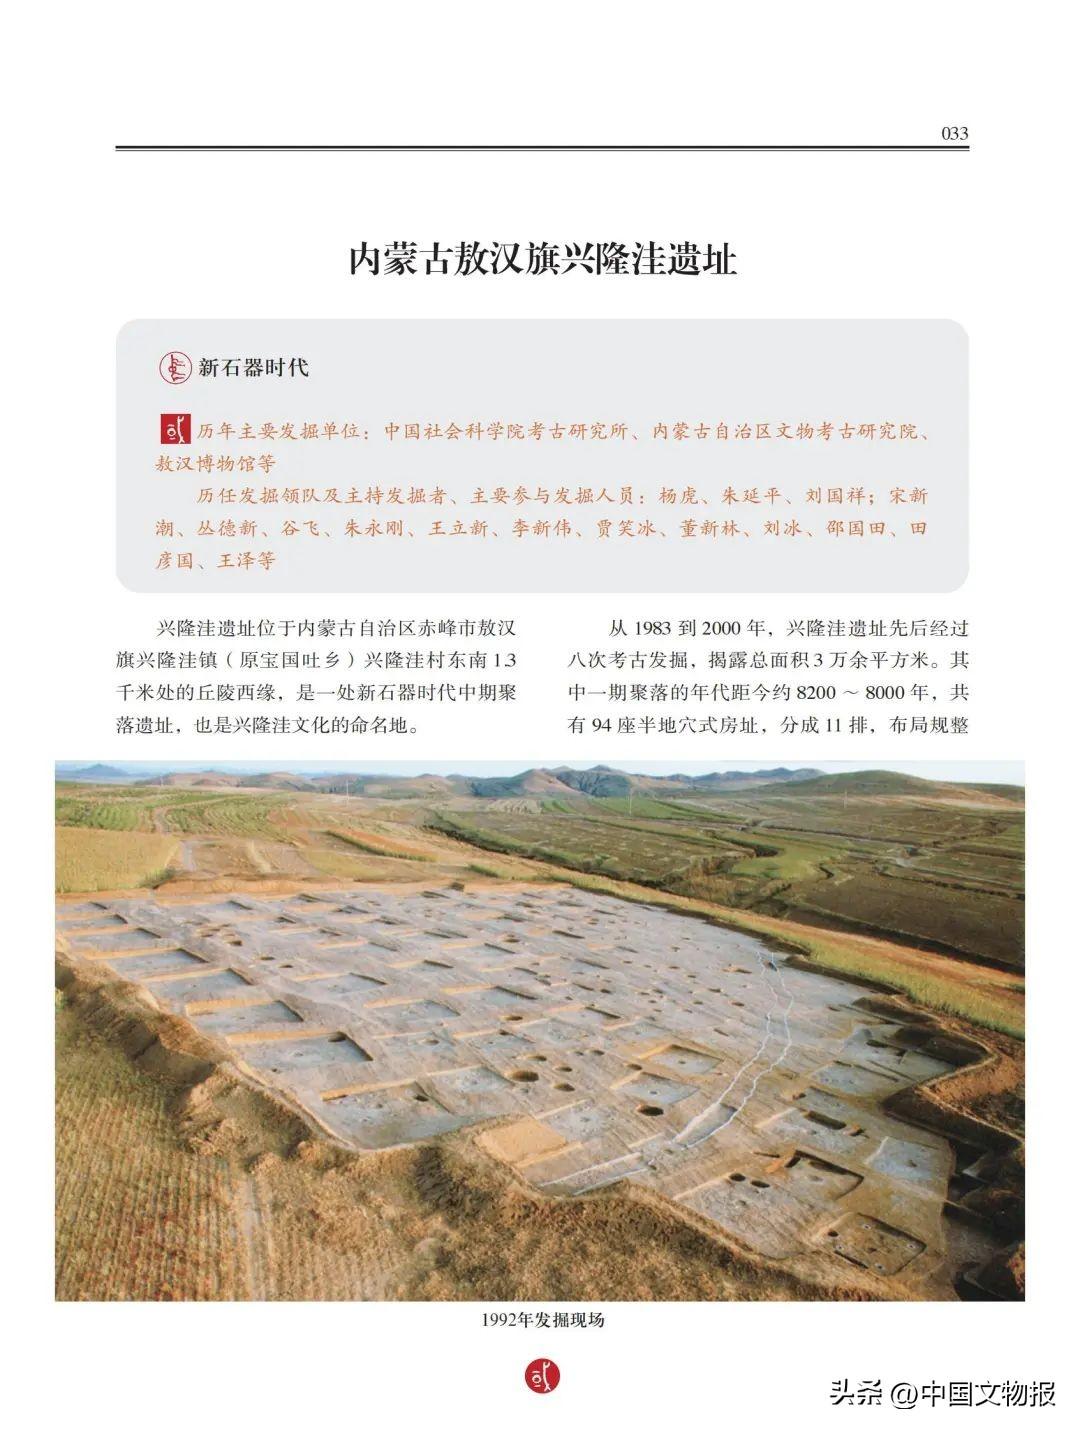 回眸百年历程 奋起时代新篇 ——记《中国百年百大考古发现》出版